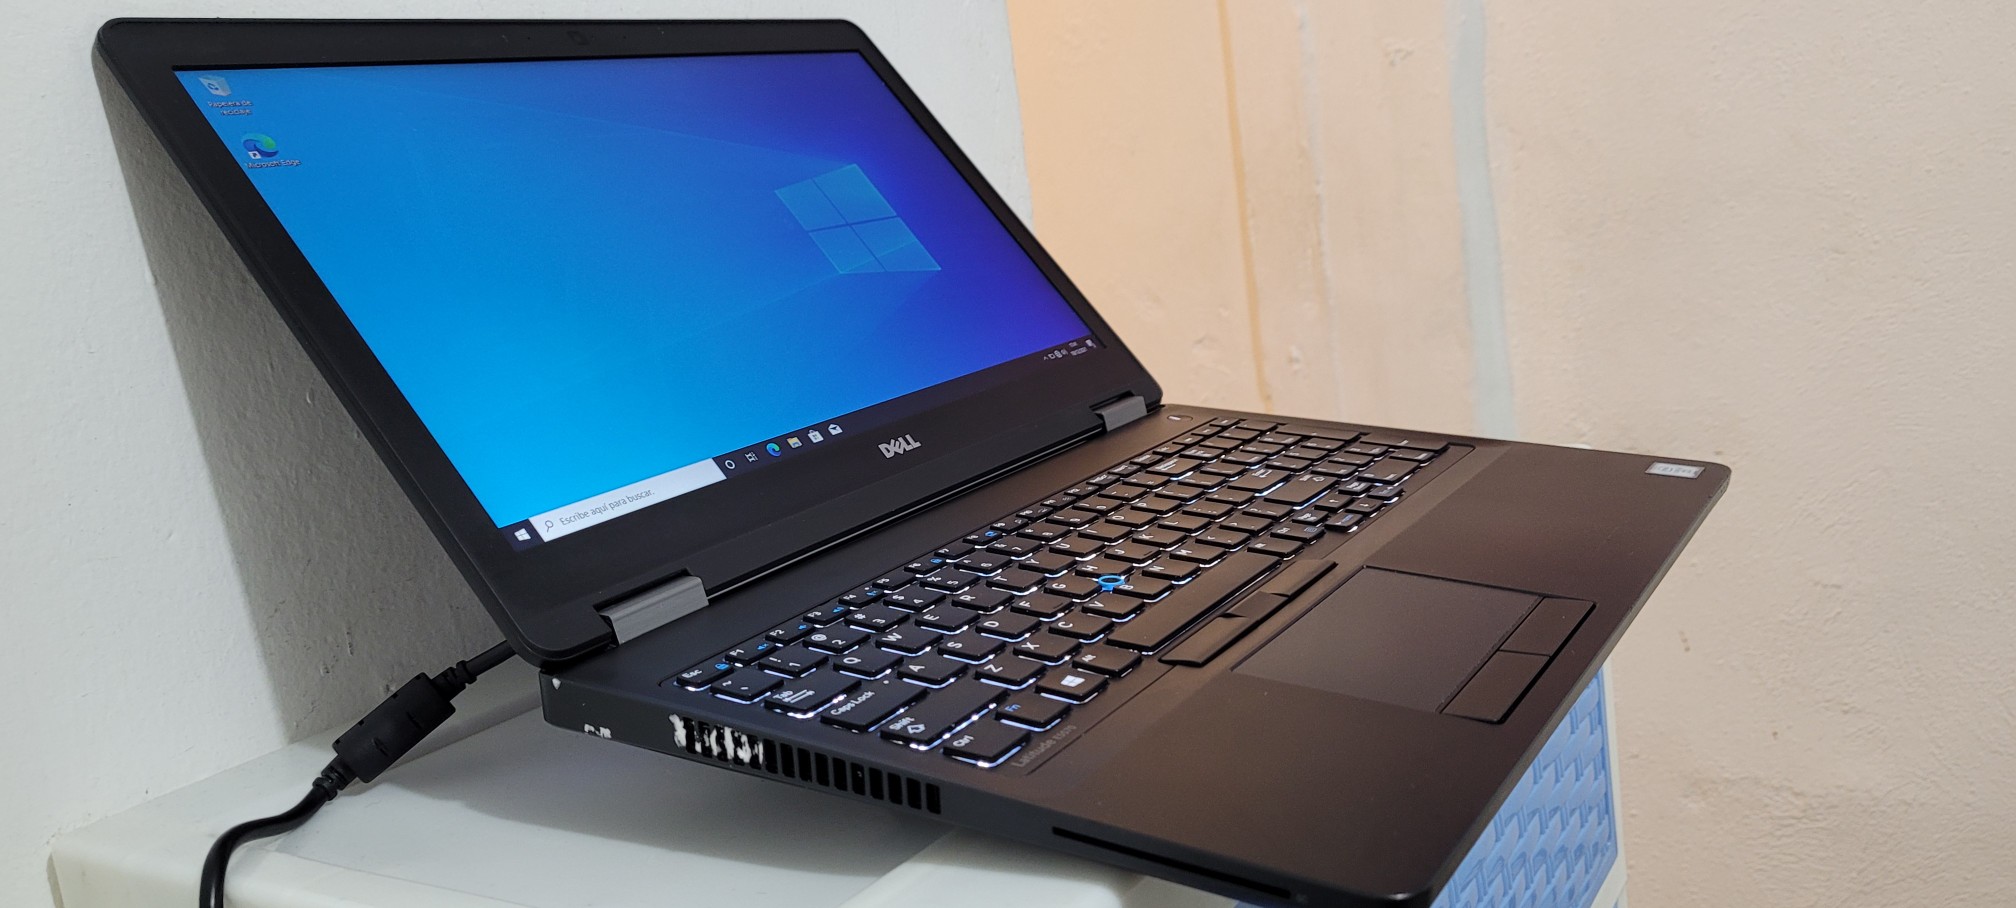 computadoras y laptops - Dell 5570 17 Pulg Core i5 6ta Gen Ram 8gb ddr4 Disco 256gb SSD Full 1